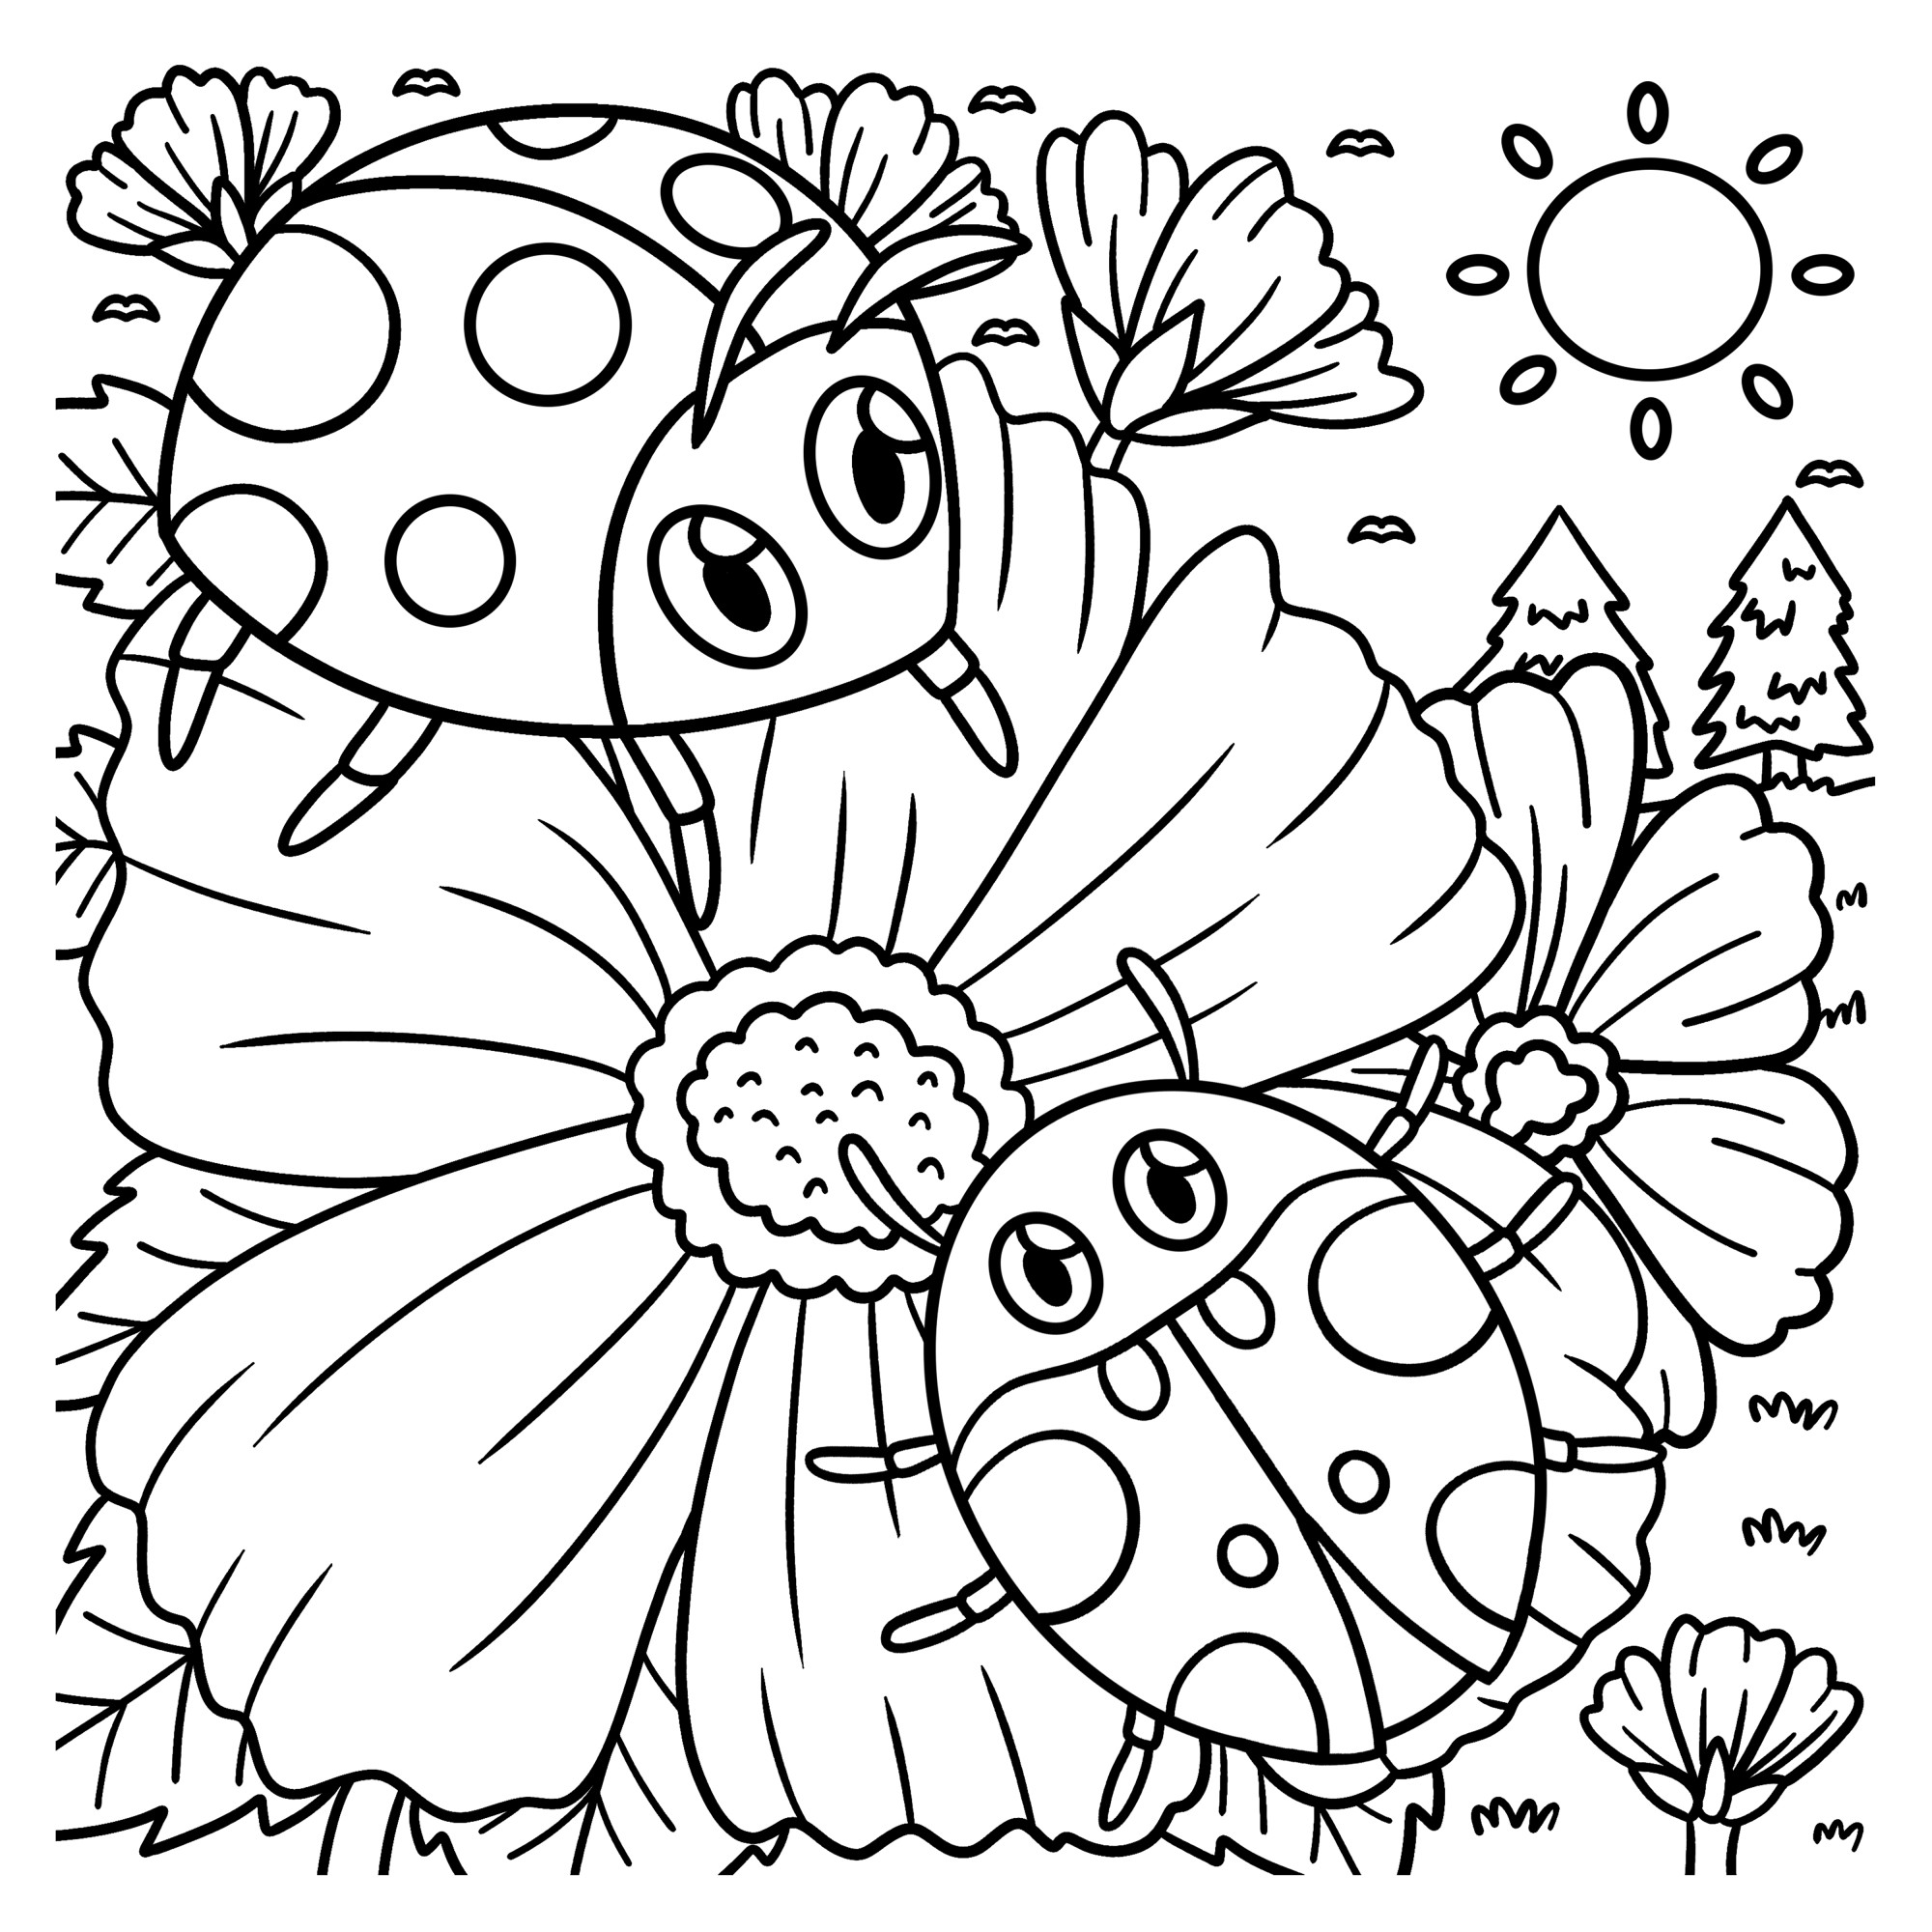 Раскраска для детей: две божьи коровки на цветке